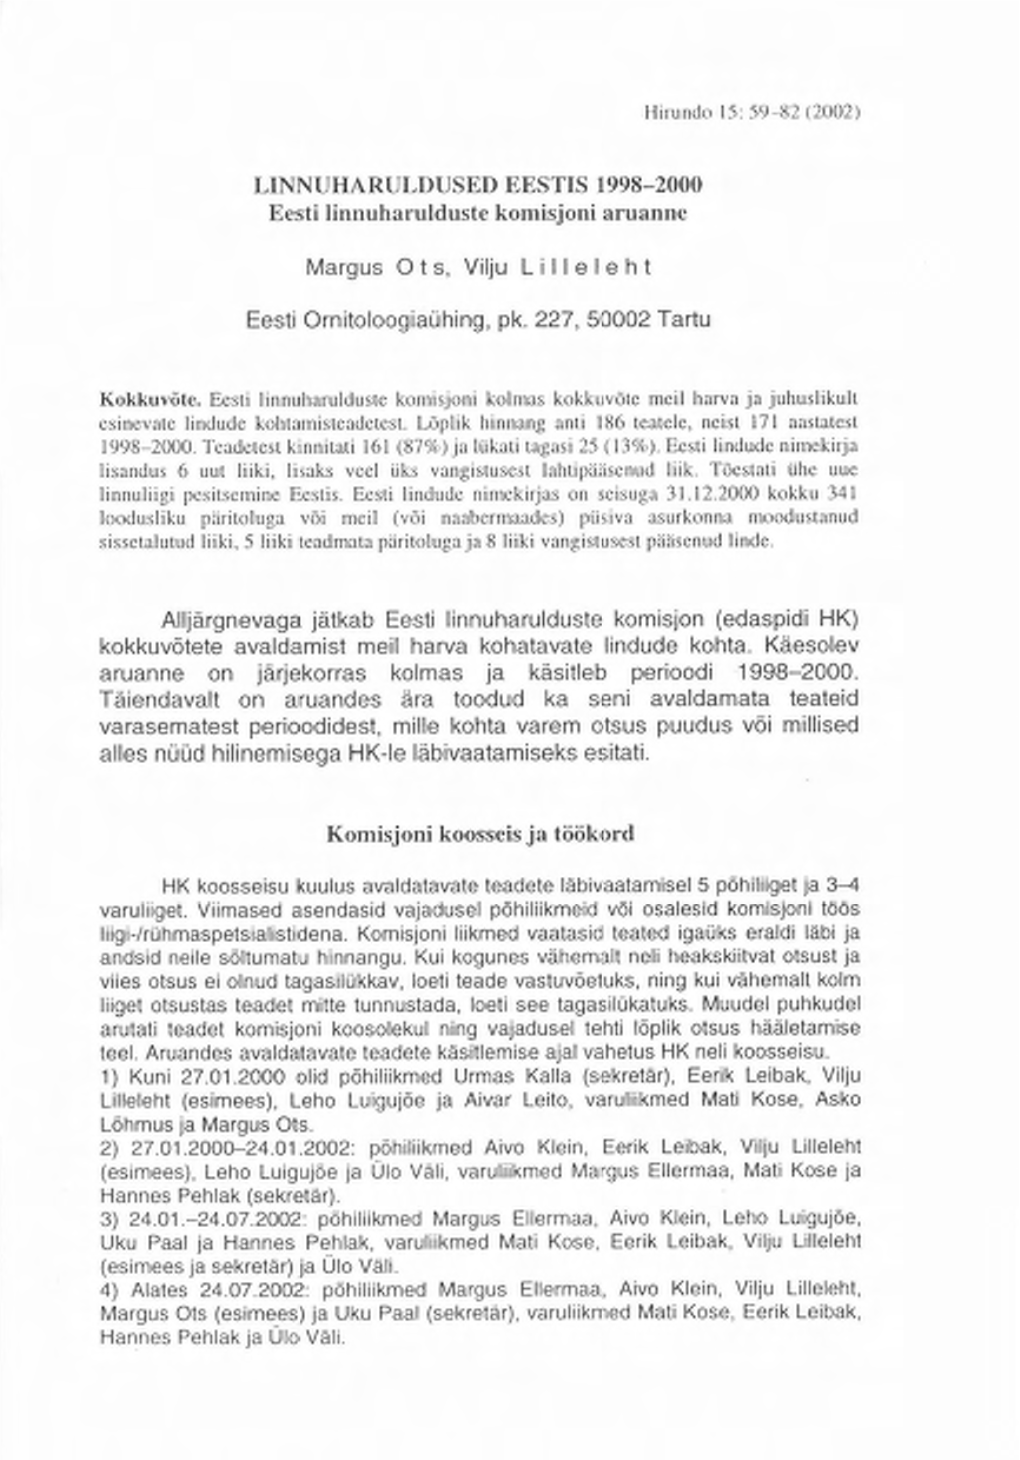 LINNUHARULDUSED EESTIS 1998-2000 Eesti Linnuharulduste Komisjoni Aruanne